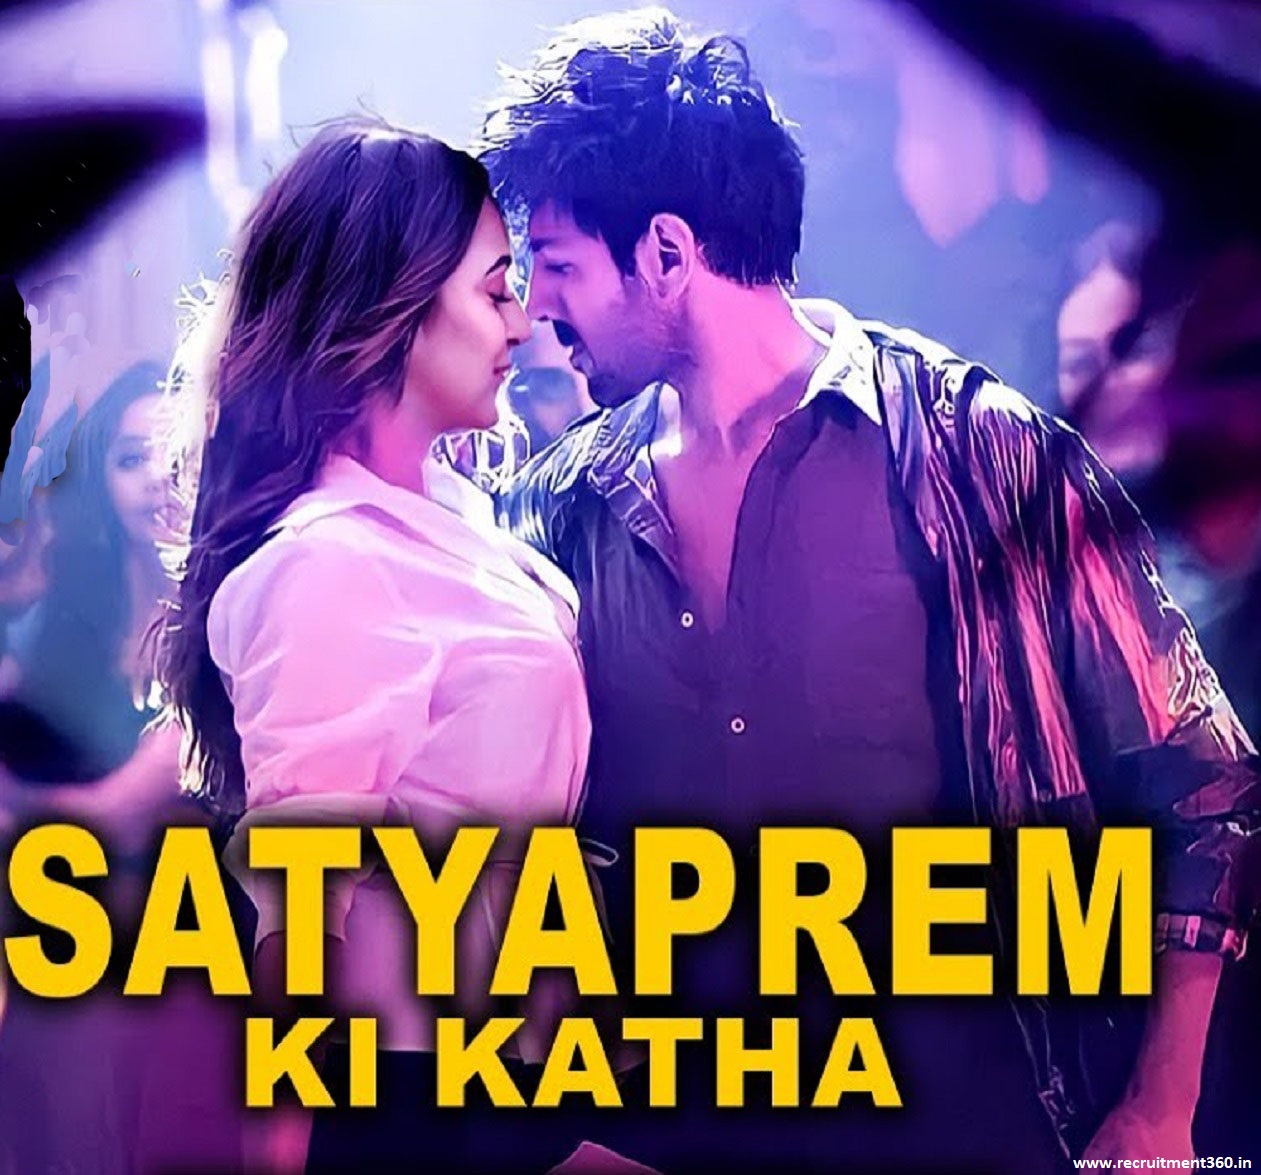 SatyaPrem Ki Katha Movie